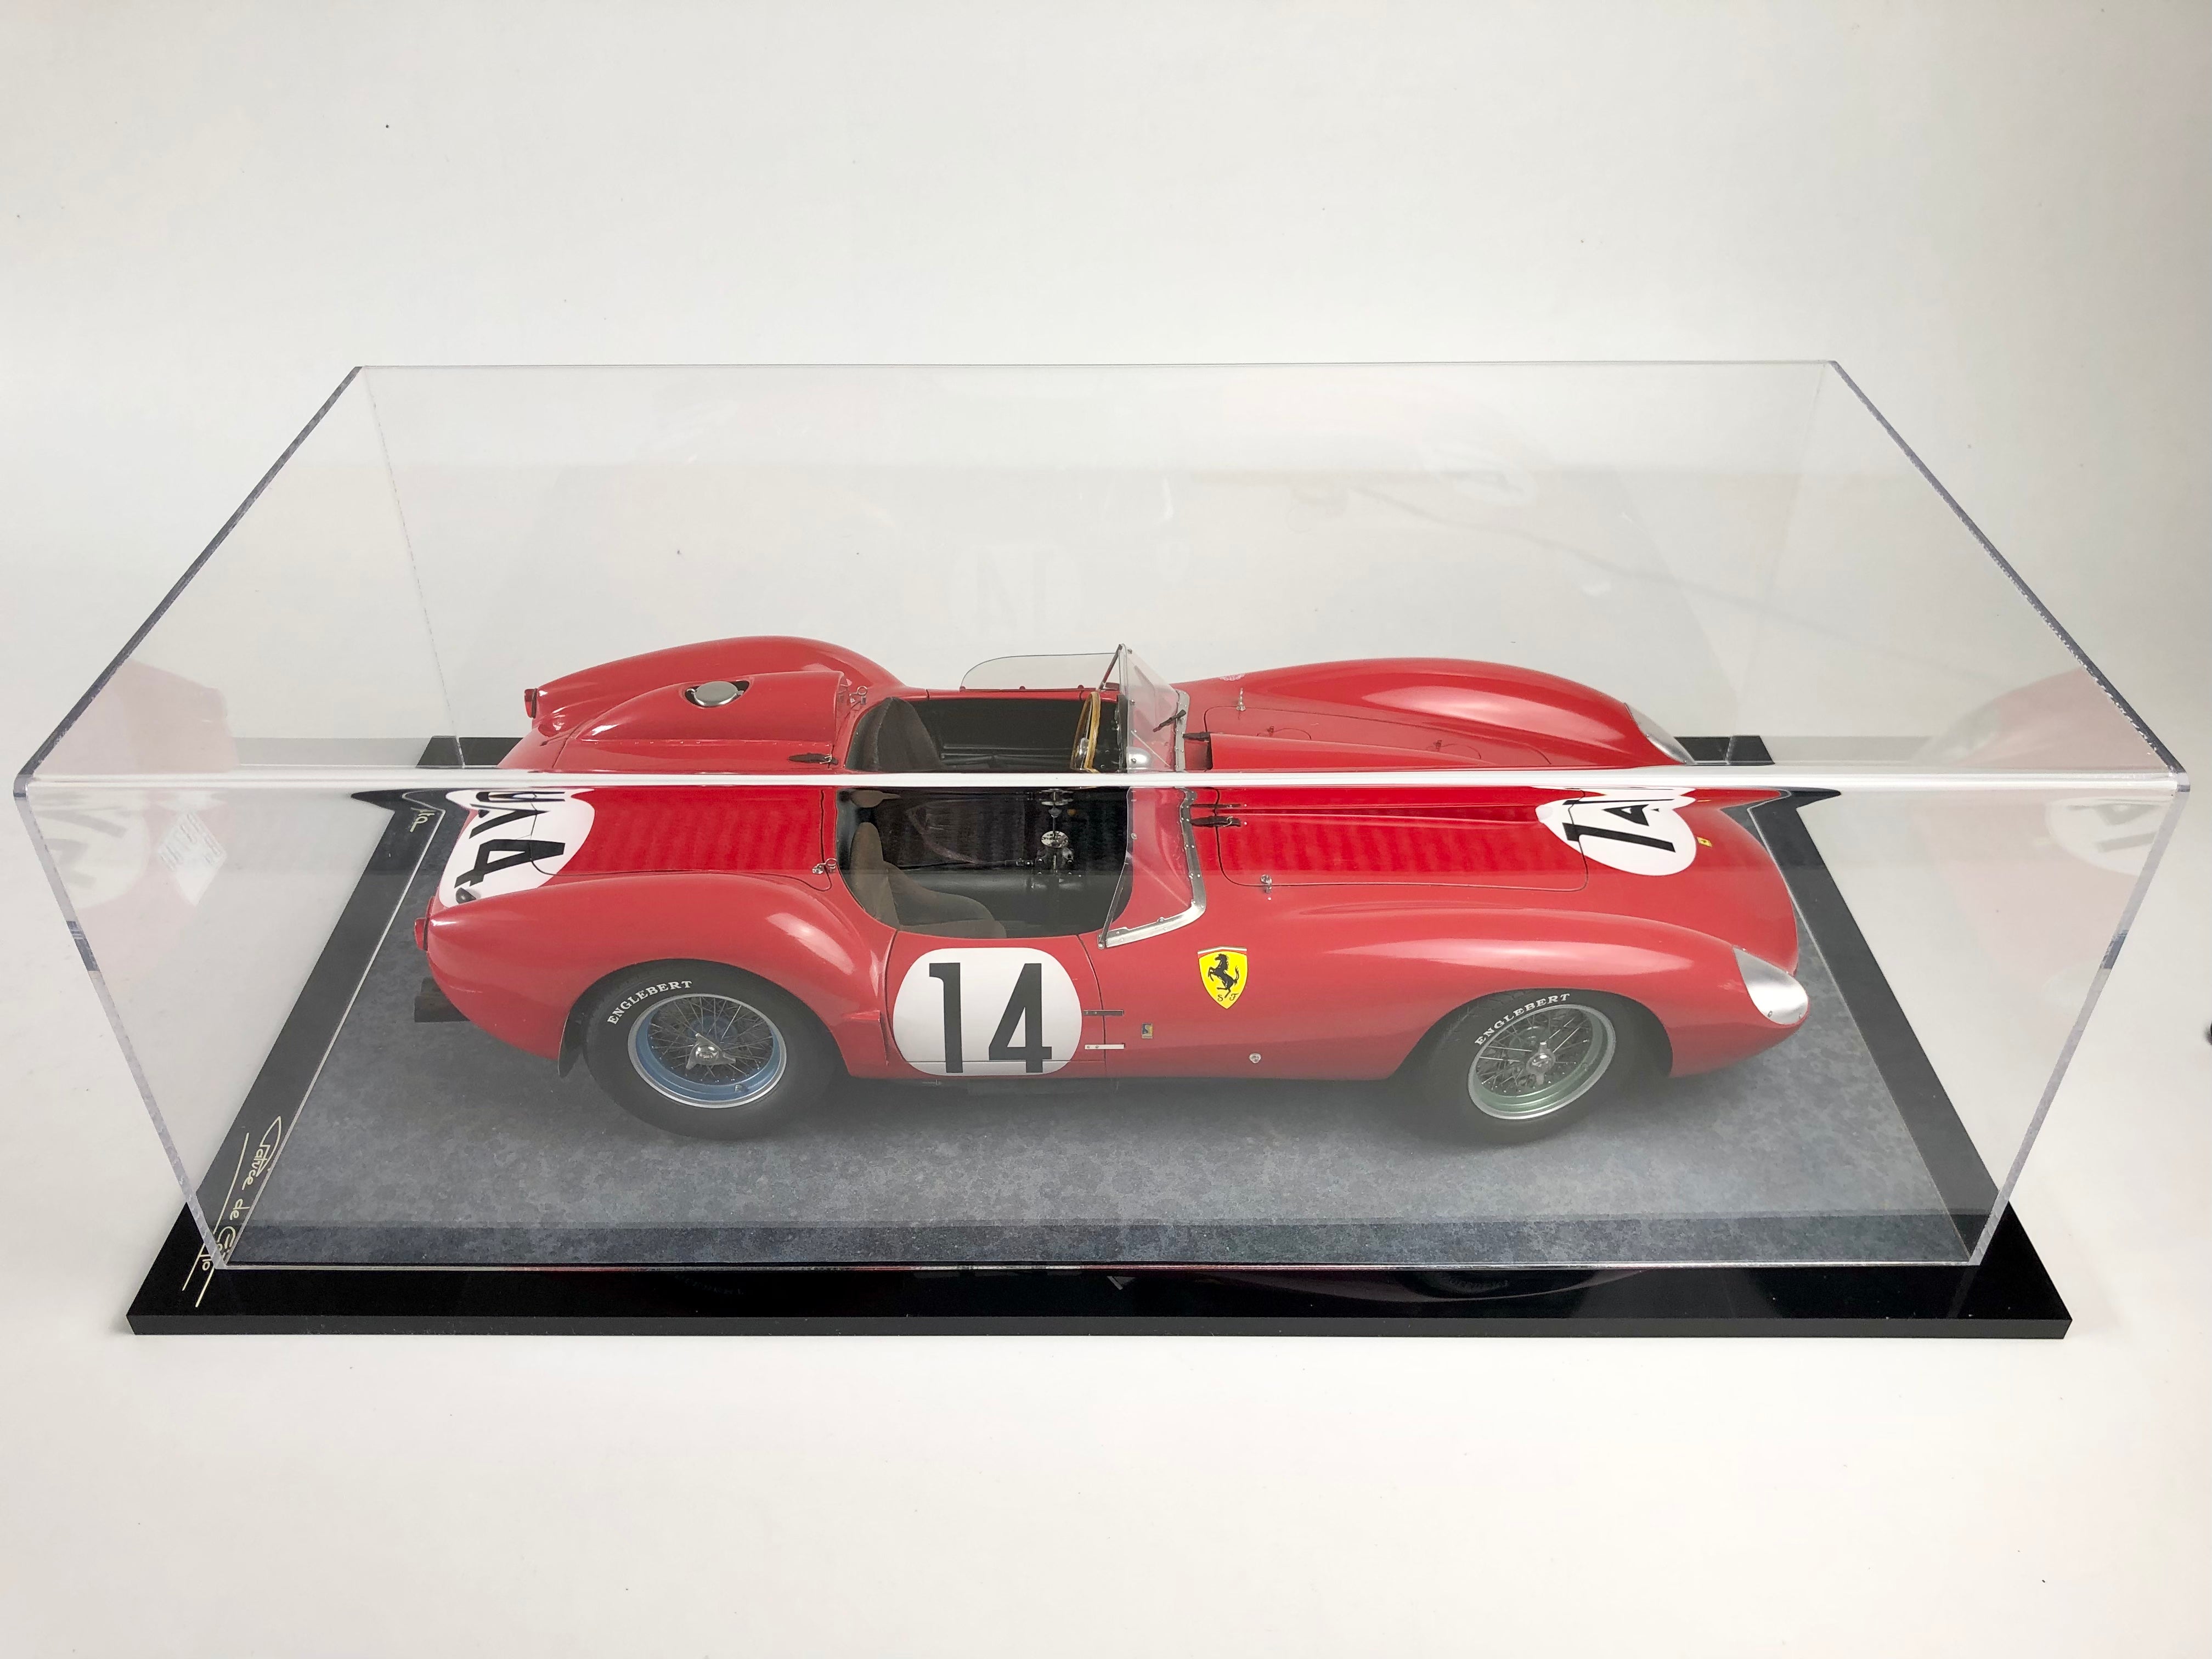 Patrice de Conto 1958 Ferrari TR58 #14 Le Mans winner